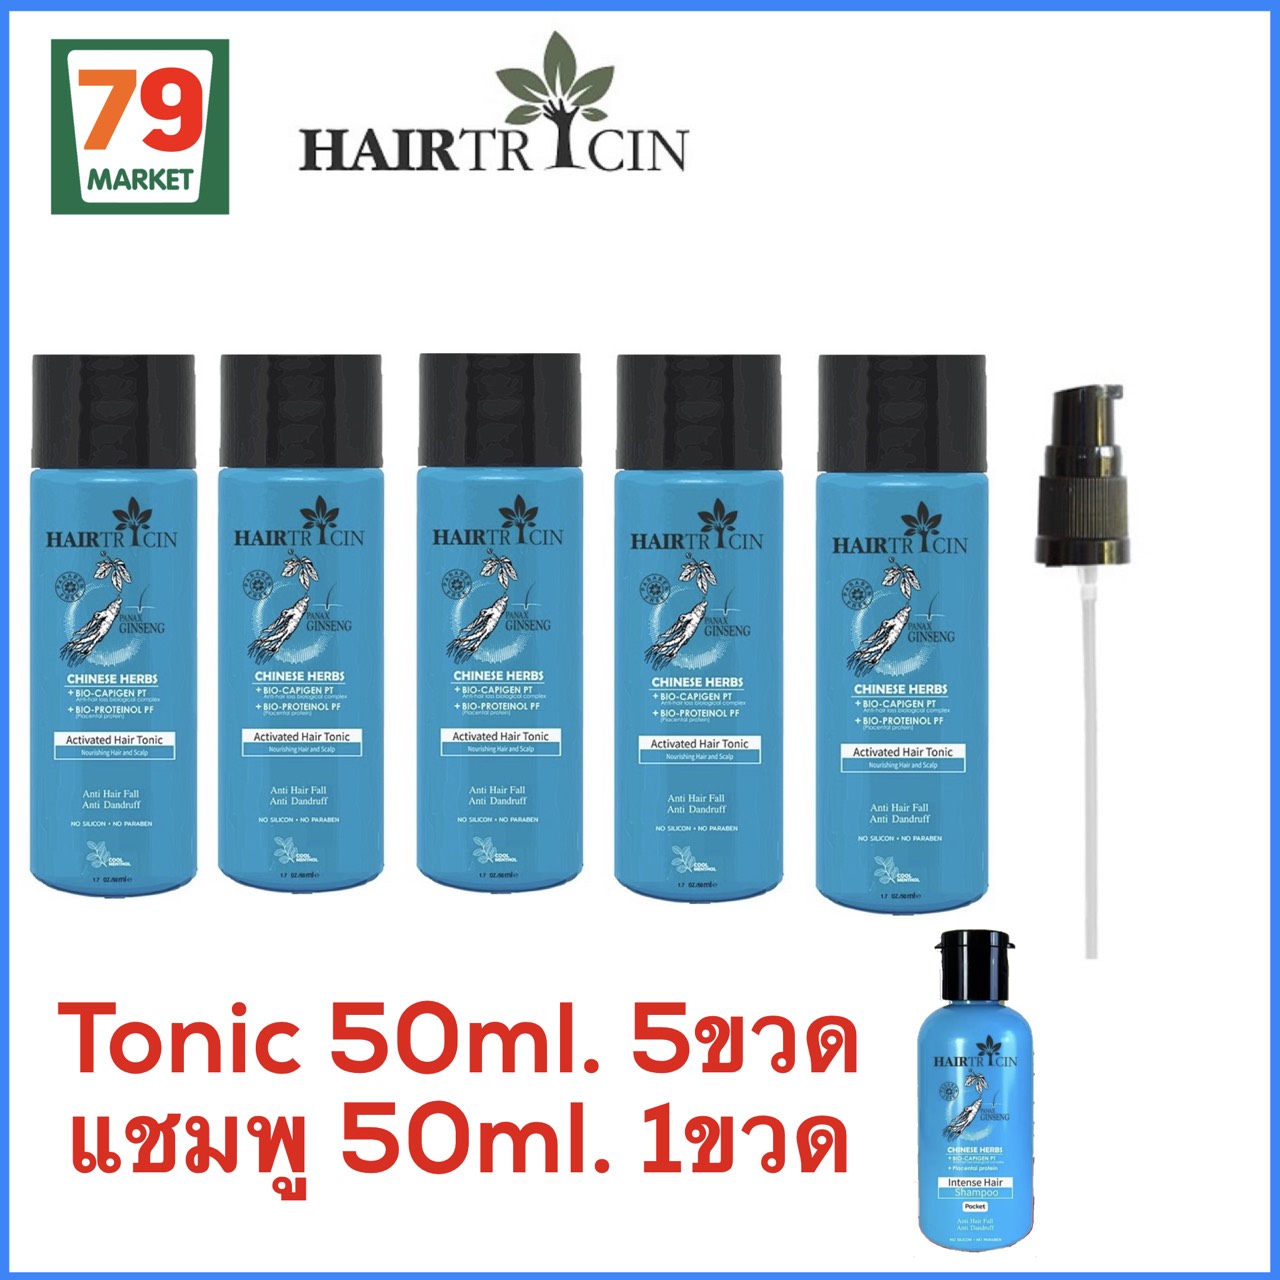 โปรโมชั่น SETสุดคุ้ม Hairtricin Hair Tonic 50 ml 5ขวด ฟรีแชมพู (มีจำกัด)